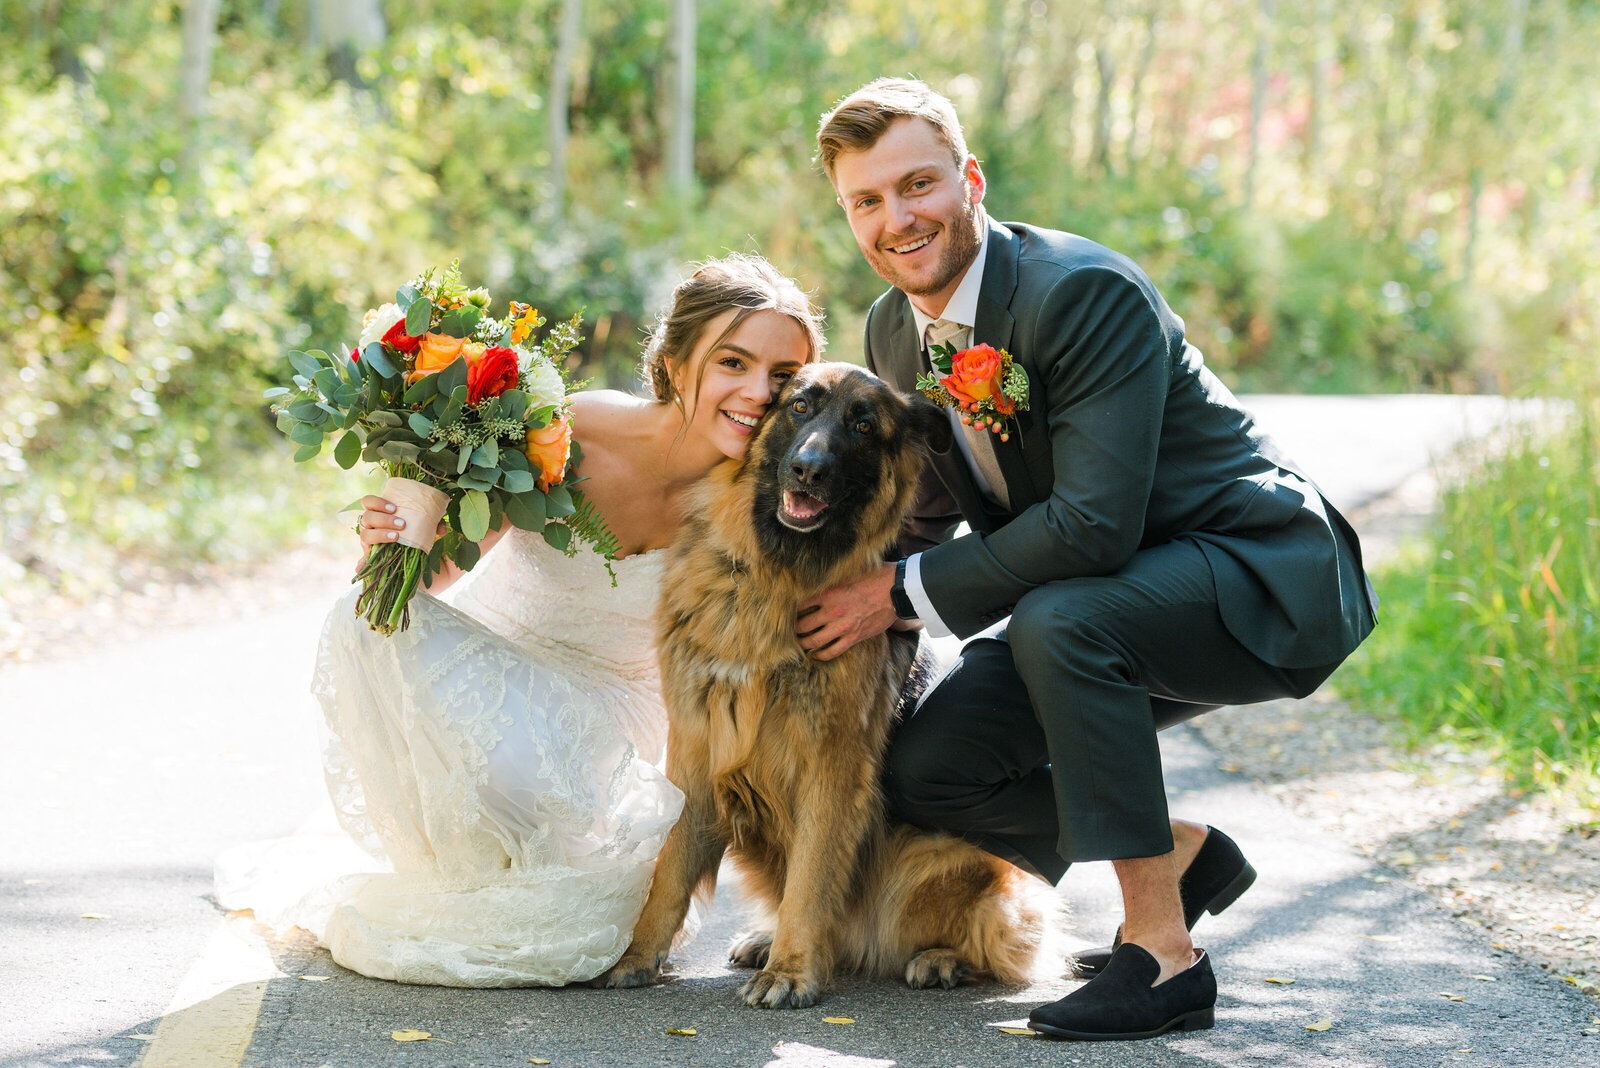 Bride-Groom-Photos-Vail-Colorado-Golf-Course-Wedding-Photographer-20